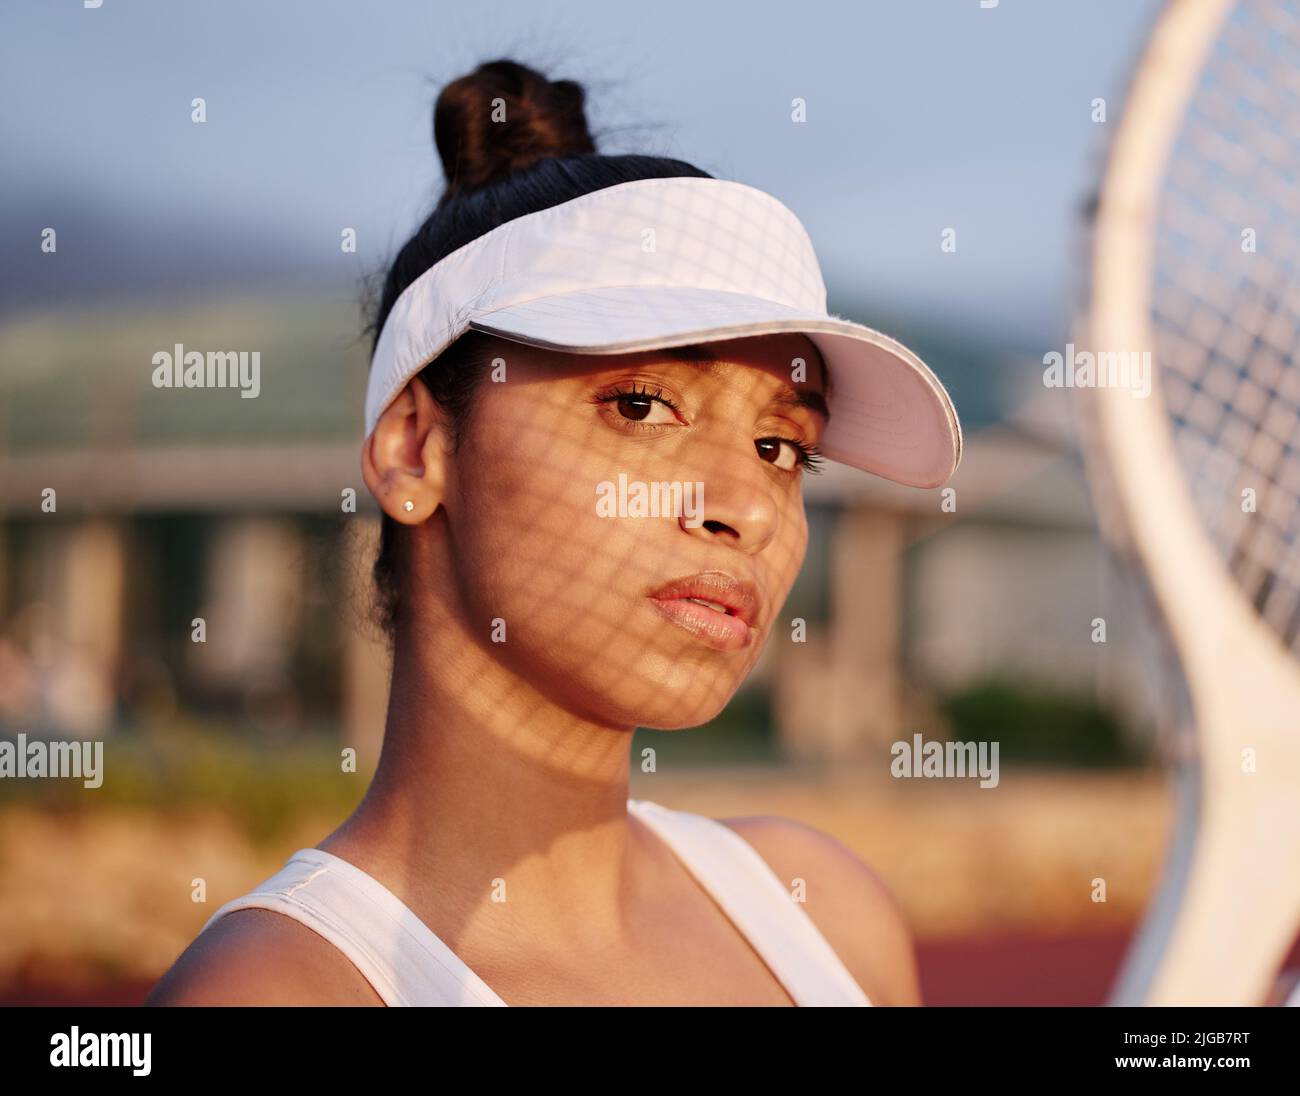 Ich Spiele Tennis. Eine sportliche junge Frau, die mit einem Tennisschläger auf einem Platz posiert. Stockfoto